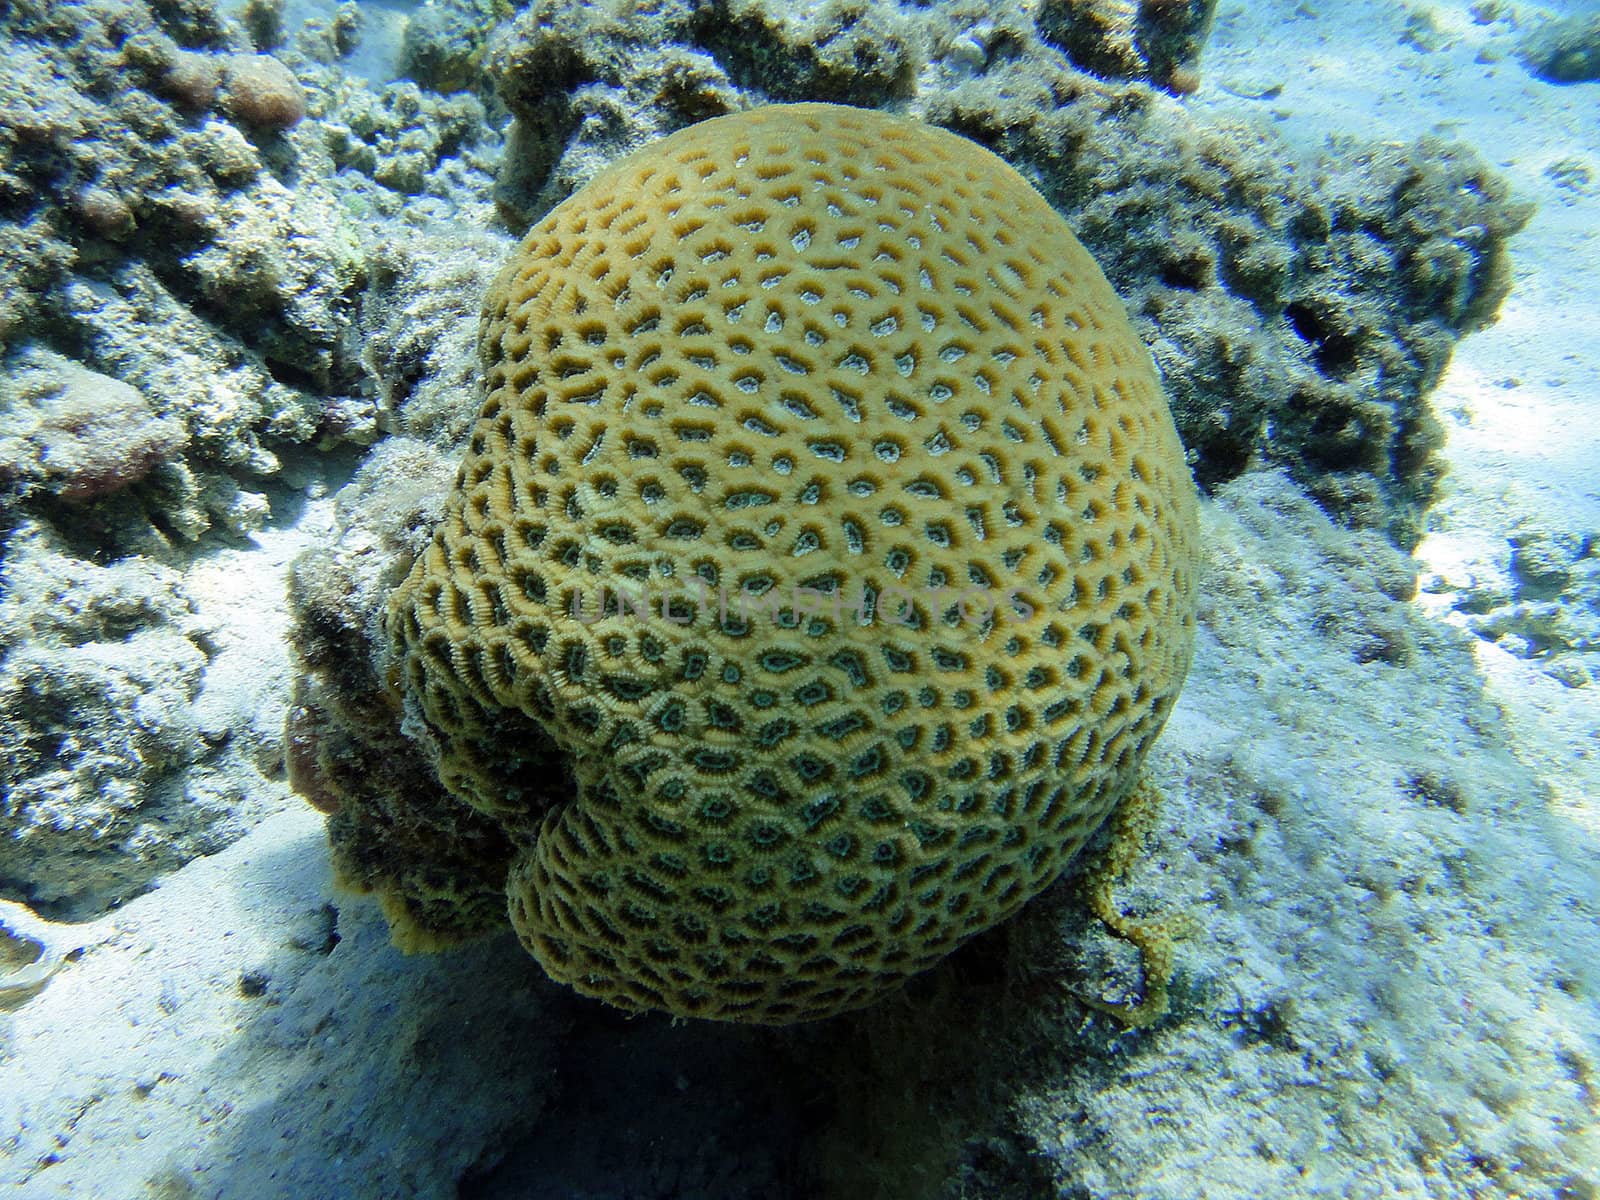 Globular coral, Red sea, Sharm El Sheikh, Egypt.